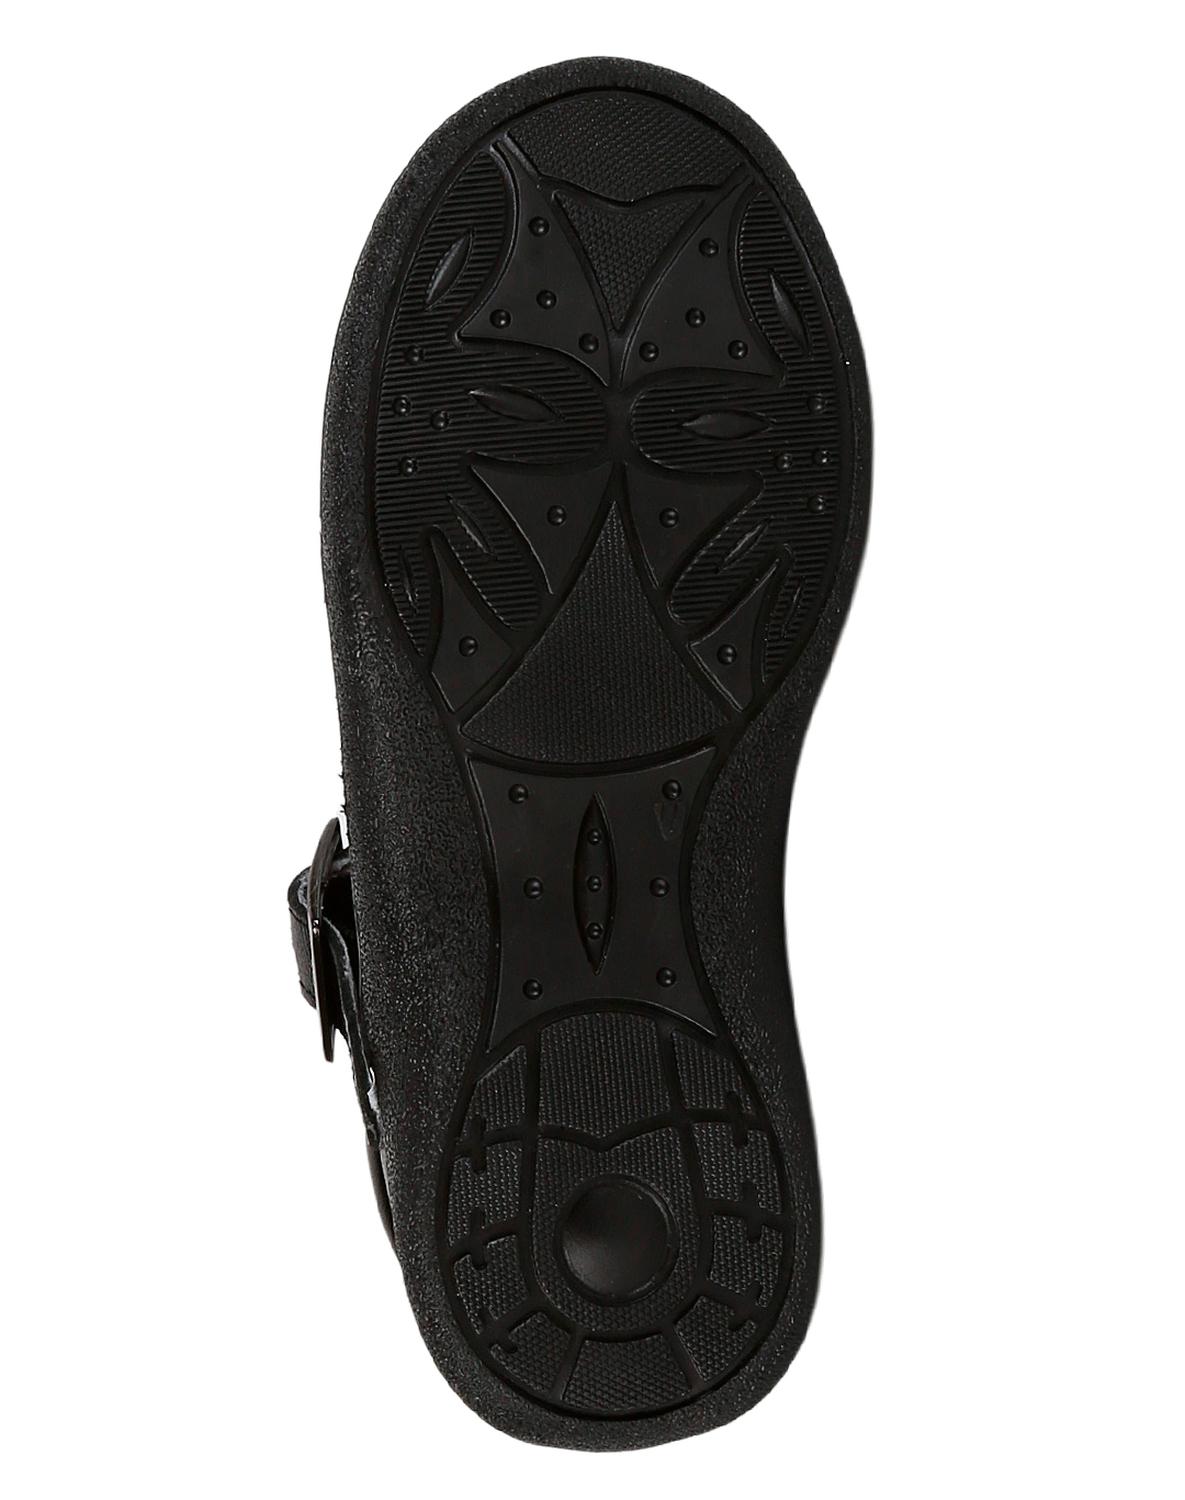 Zapato Escolar Niña Negro Piel Chicle Fresa 18803800